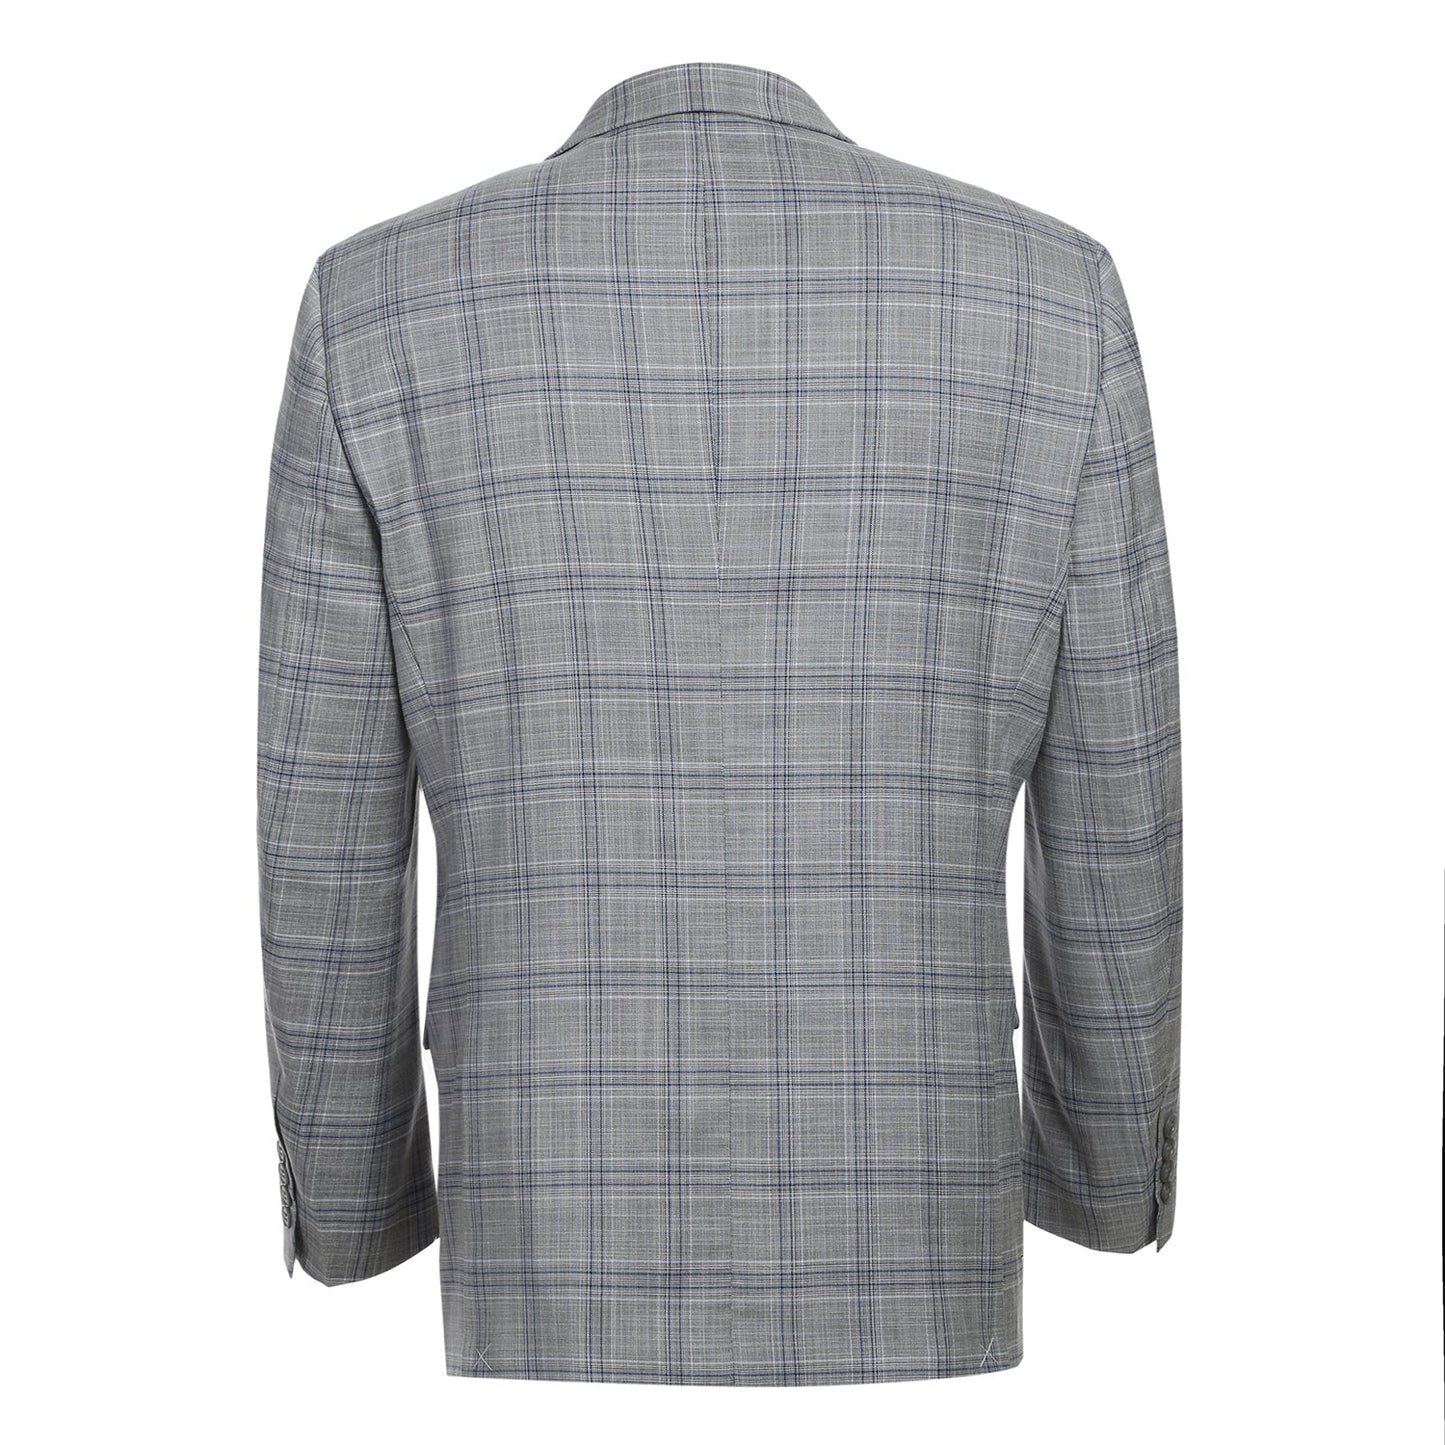 293-23 Men's Classic Fit Light Grey Plaid Suit